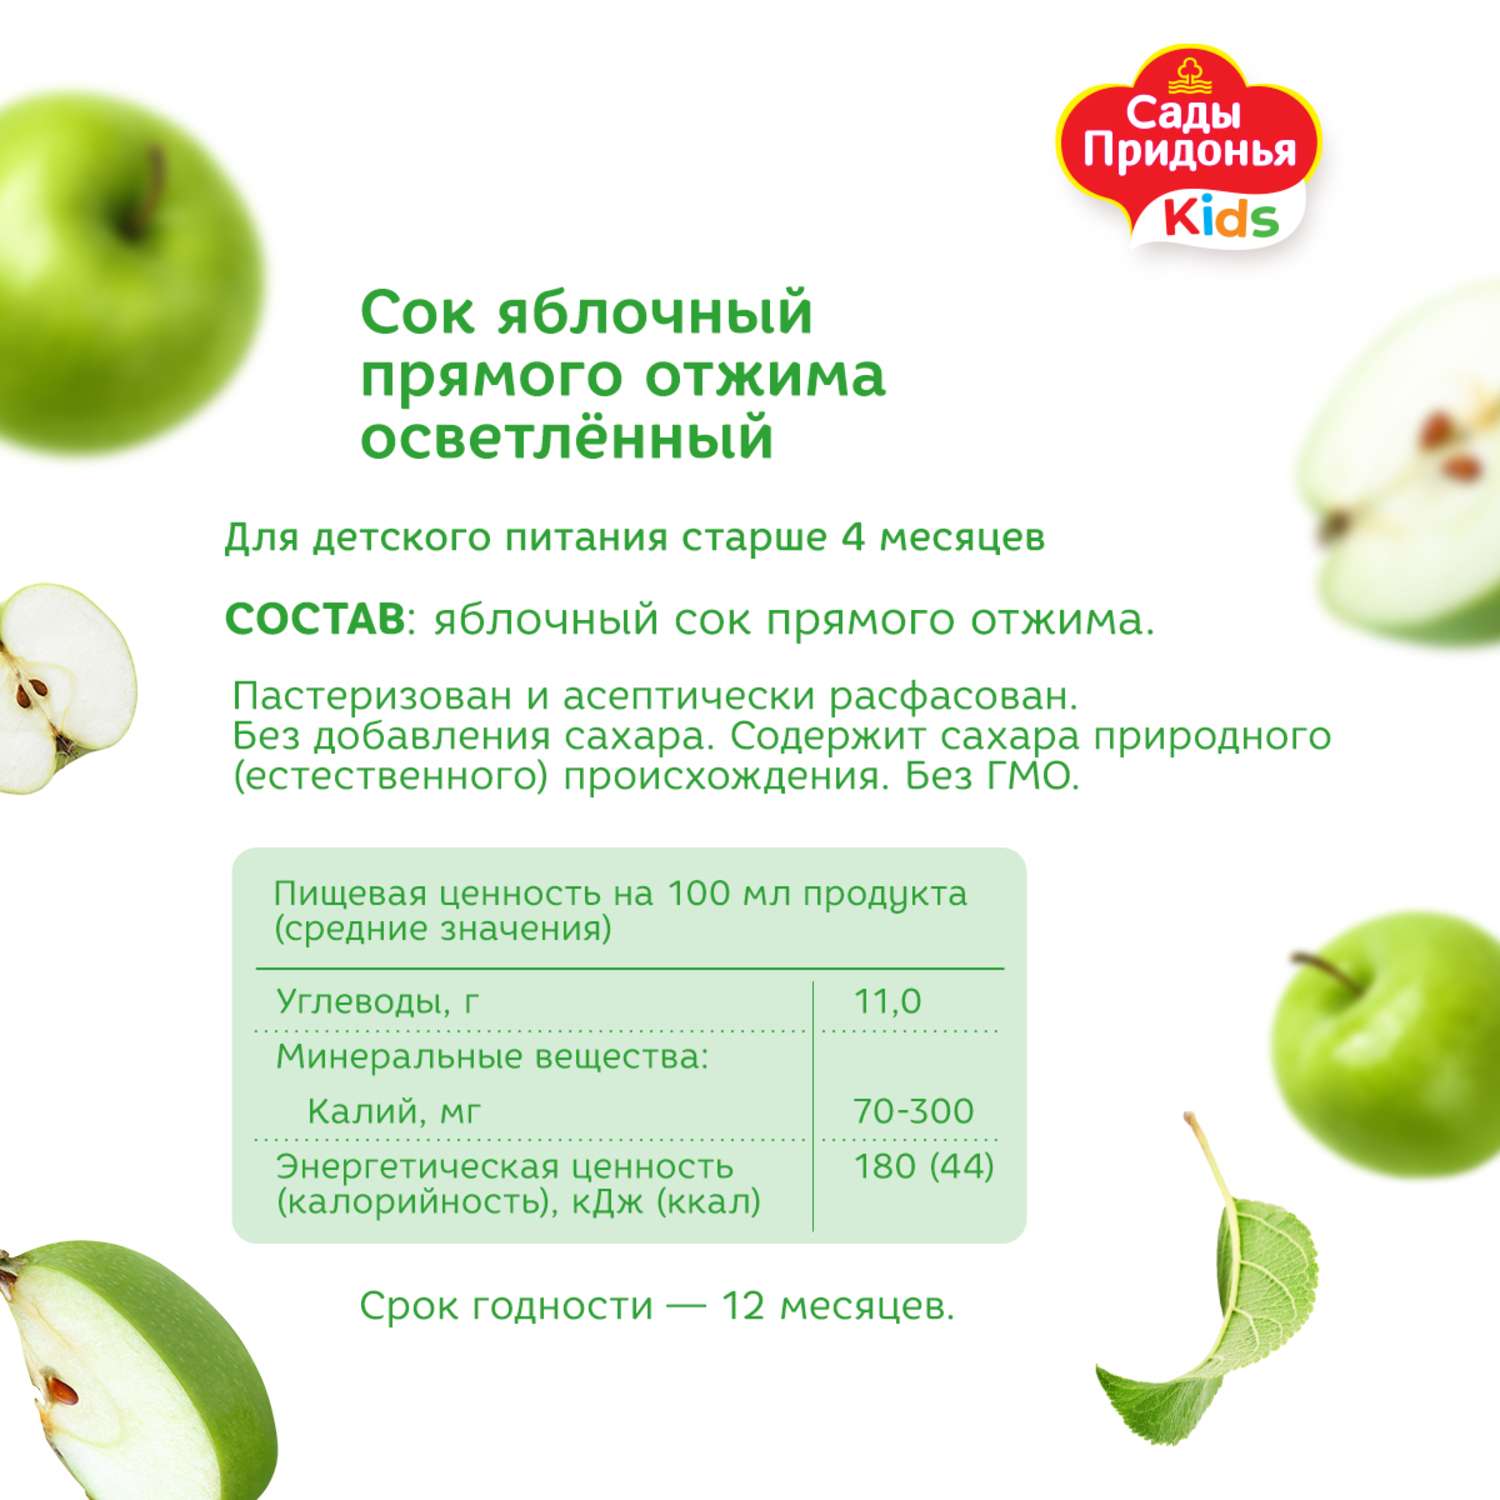 Сок Сады Придонья яблоко прямого отжима 0.2л с 4 месяцев - фото 3